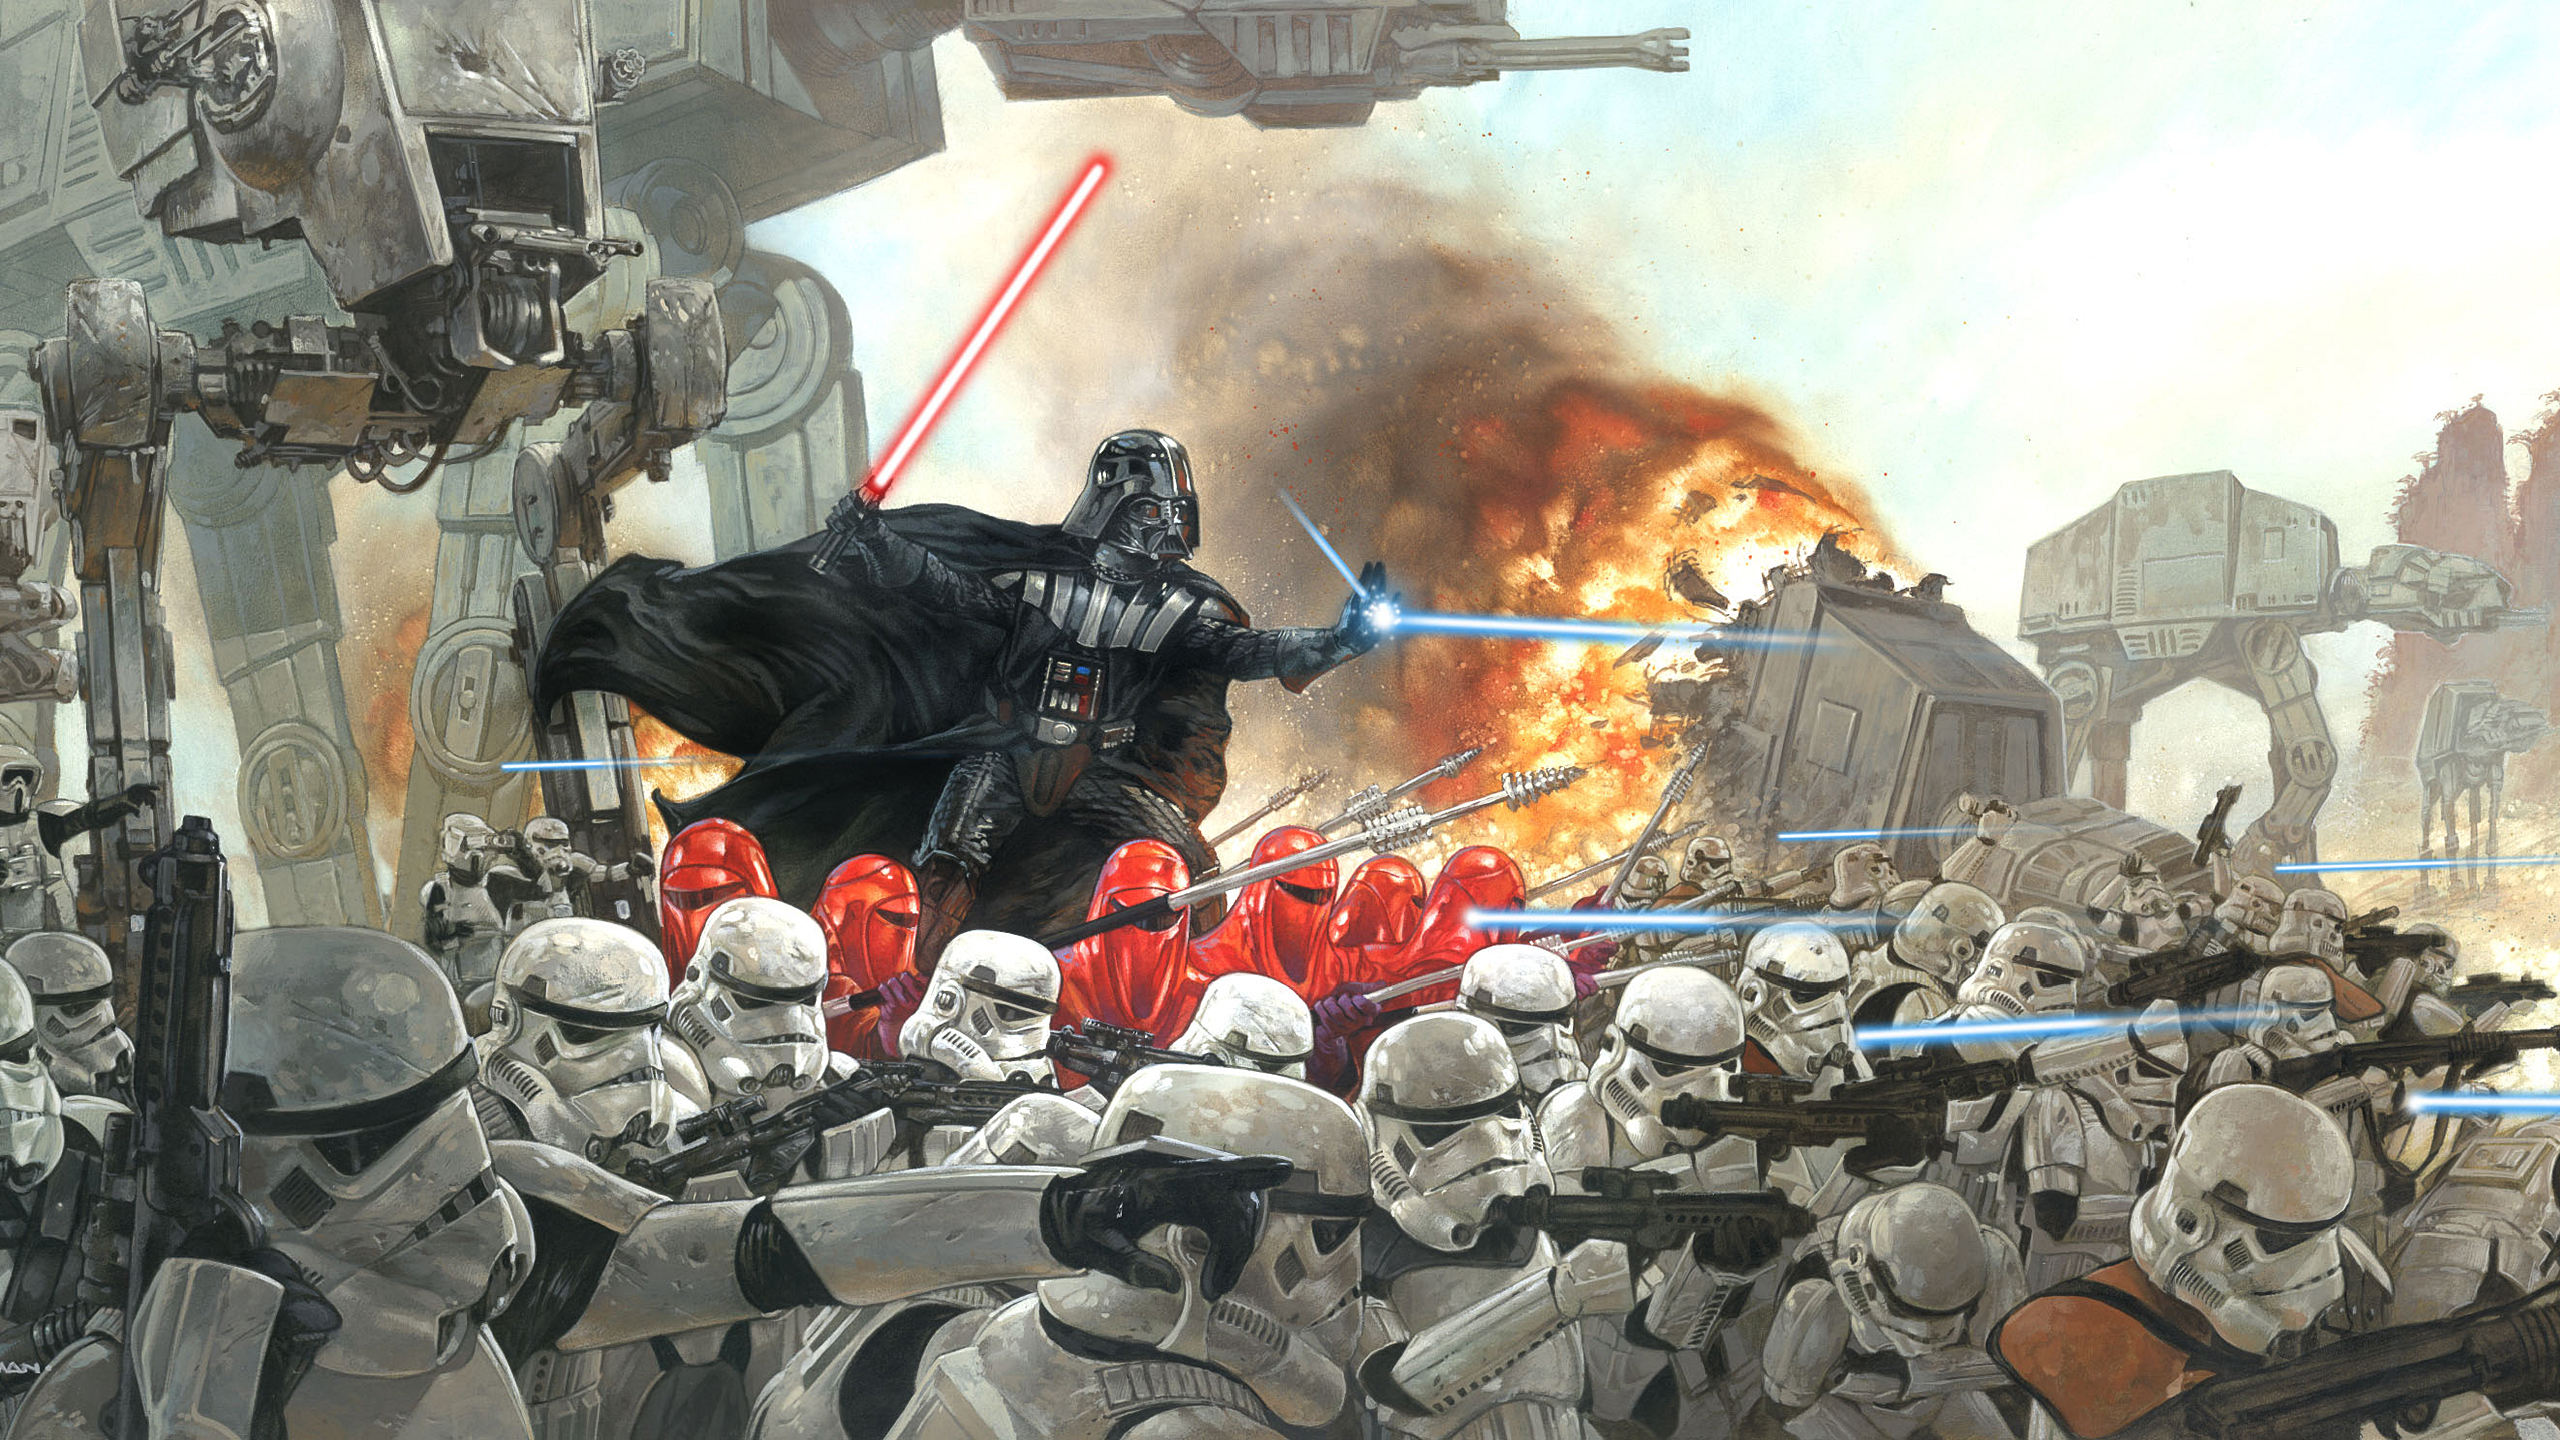 Star Wars Wallpaper Darth Vader